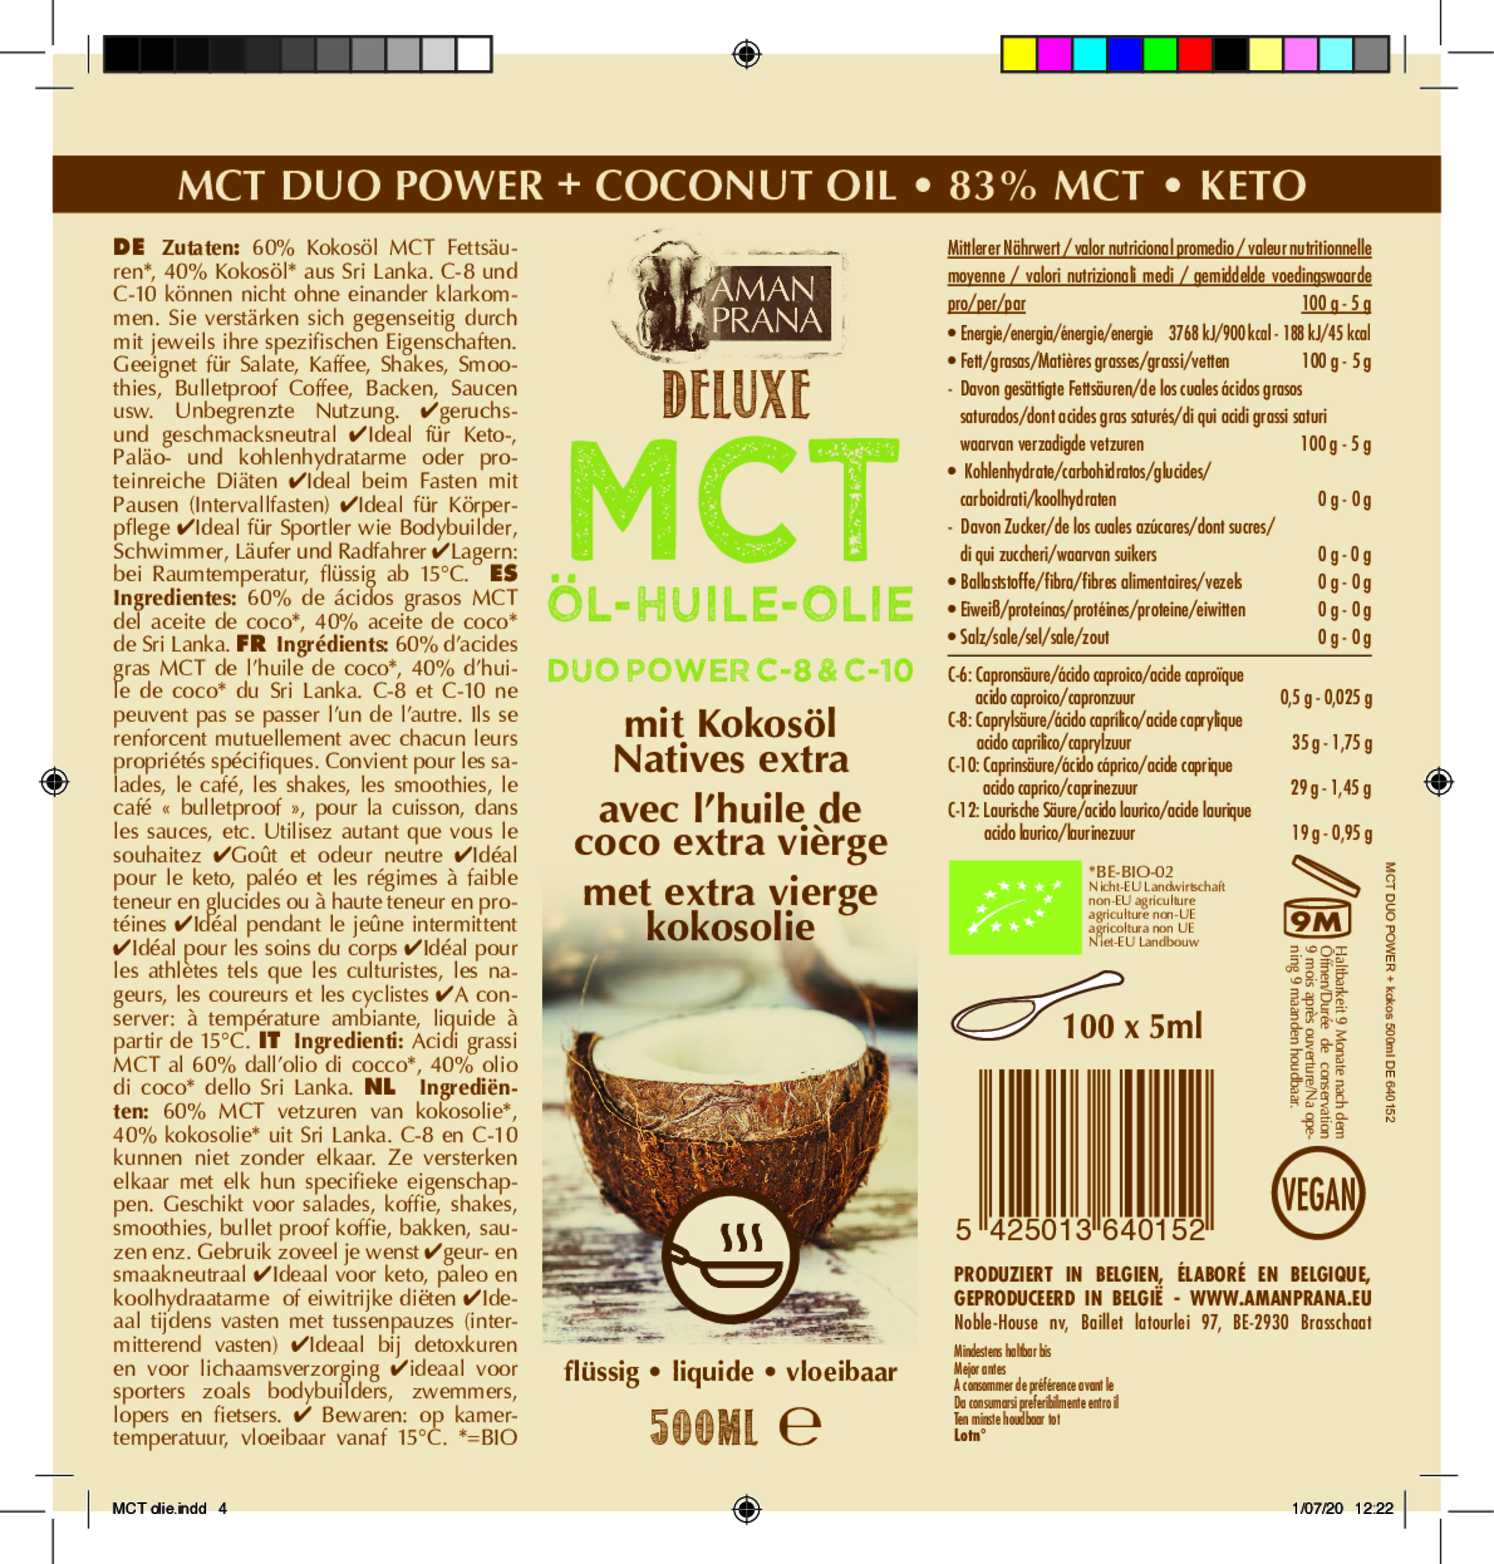 DeLuxe MCT Olie met Kokosolie afbeelding van document #1, etiket